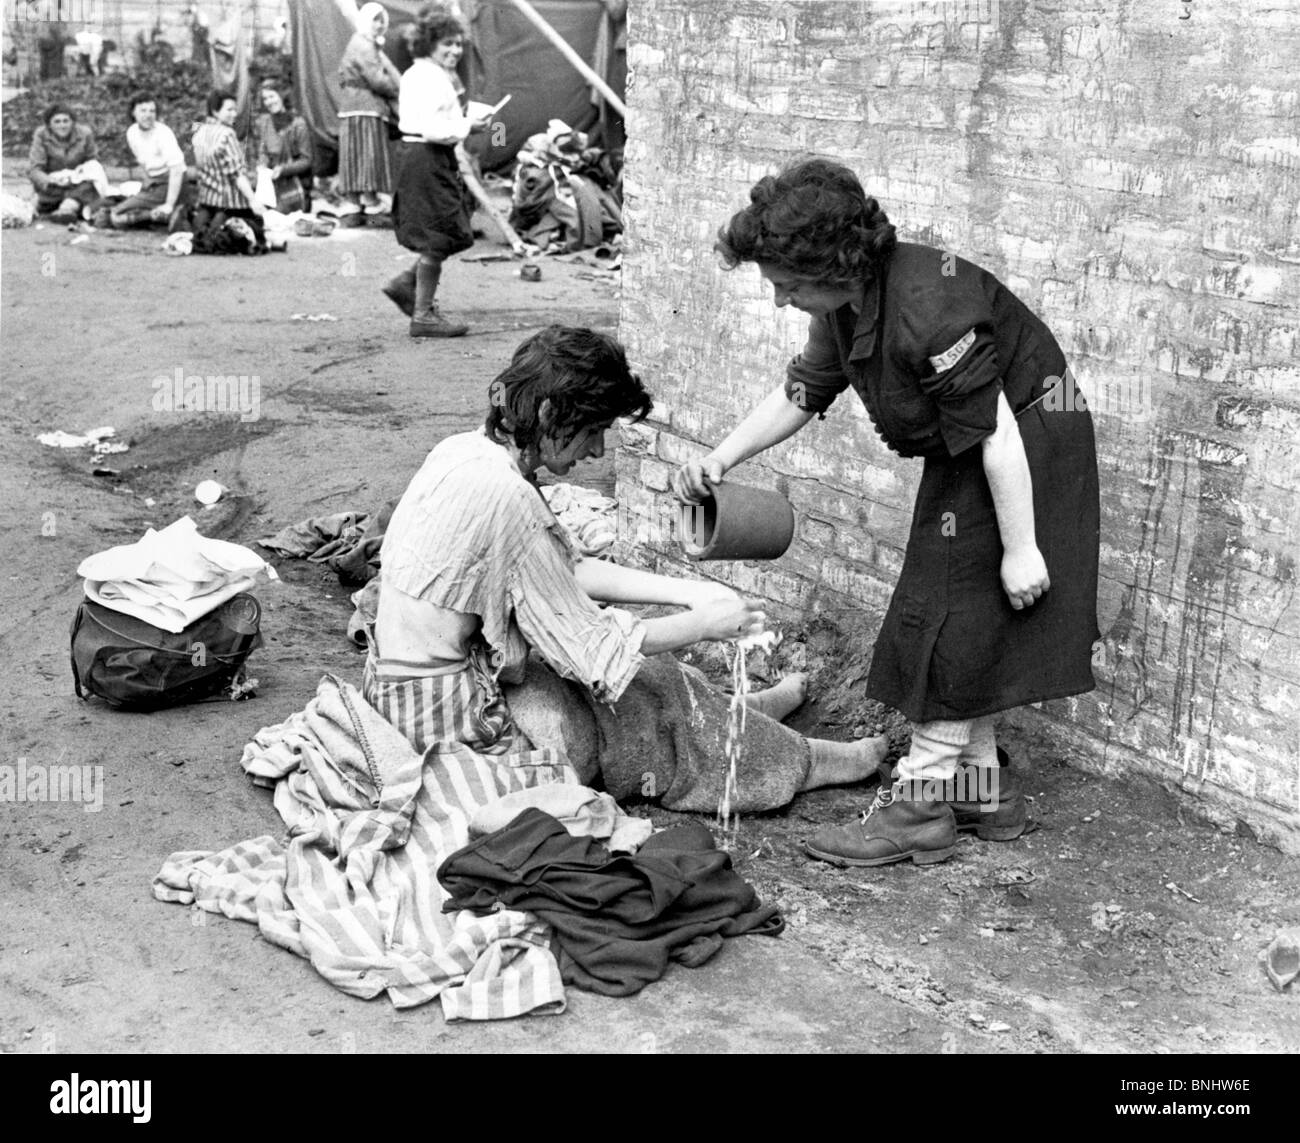 La Seconde Guerre mondiale, camp de concentration de Bergen-Belsen Holocauste Allemagne Avril 1945 Historique Historique L'histoire des Nazis prisonniers prisonniers Banque D'Images